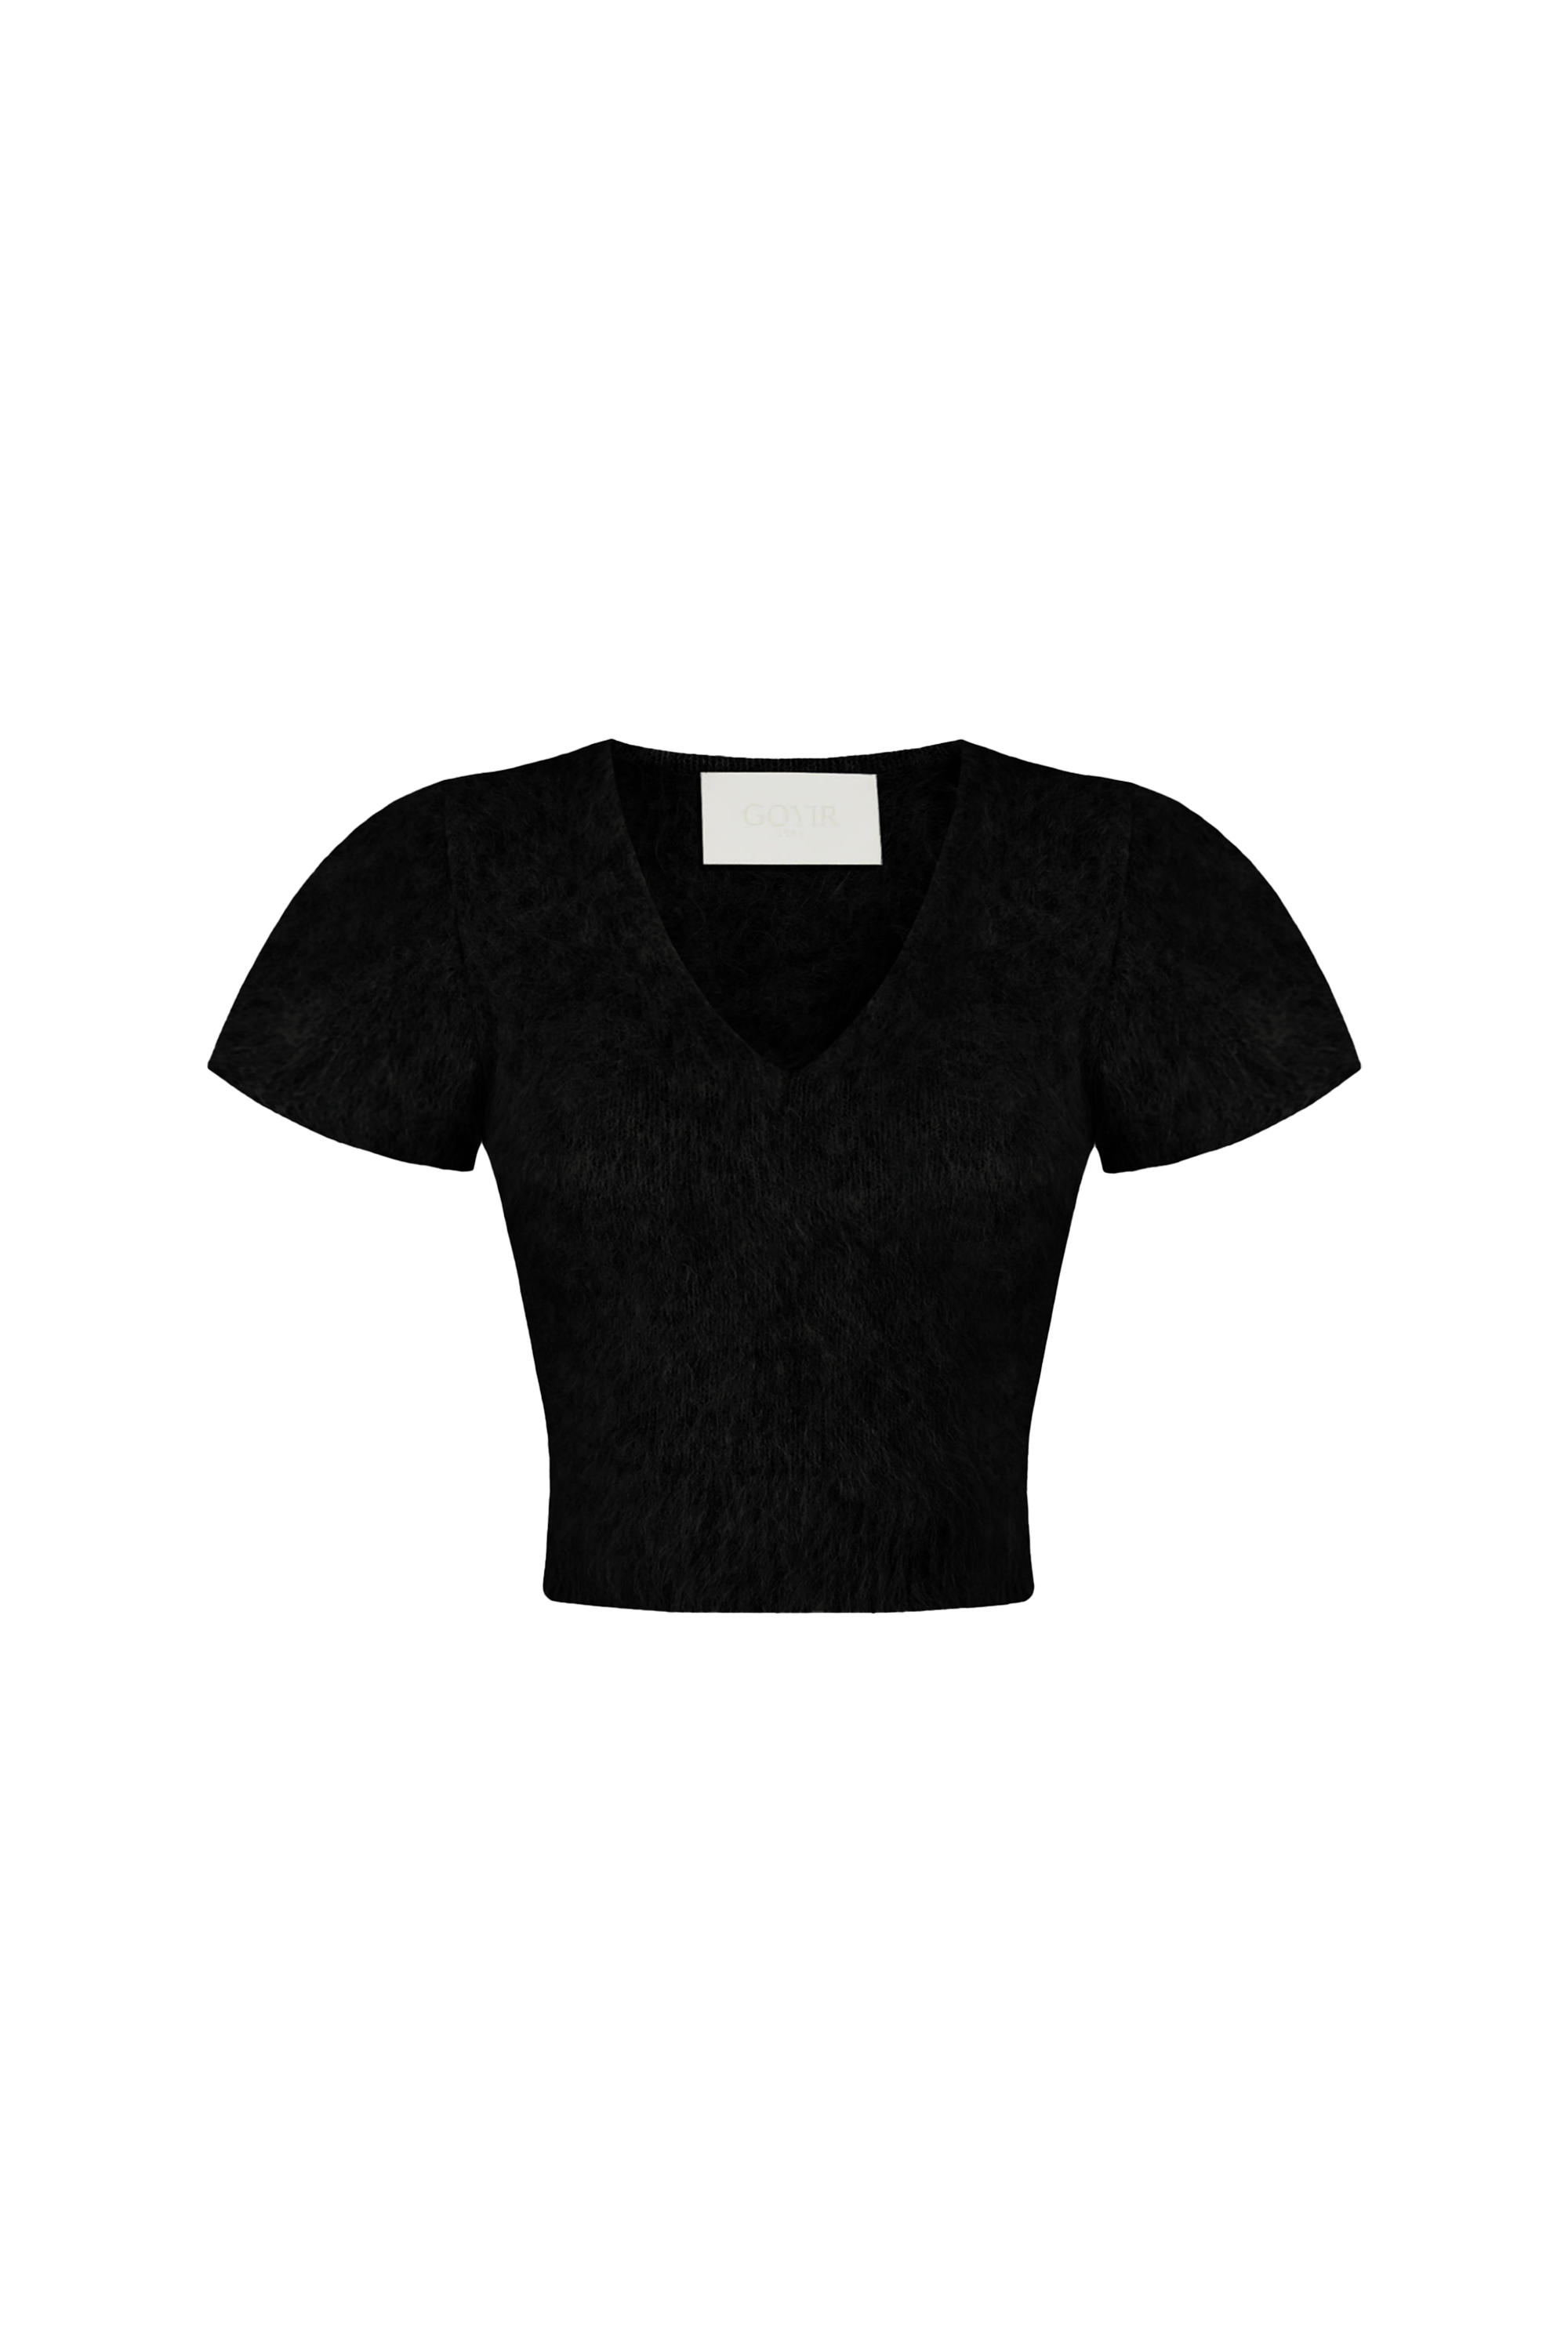 GOYIR1953 Holiday Premium Alpaca Knitwear Black